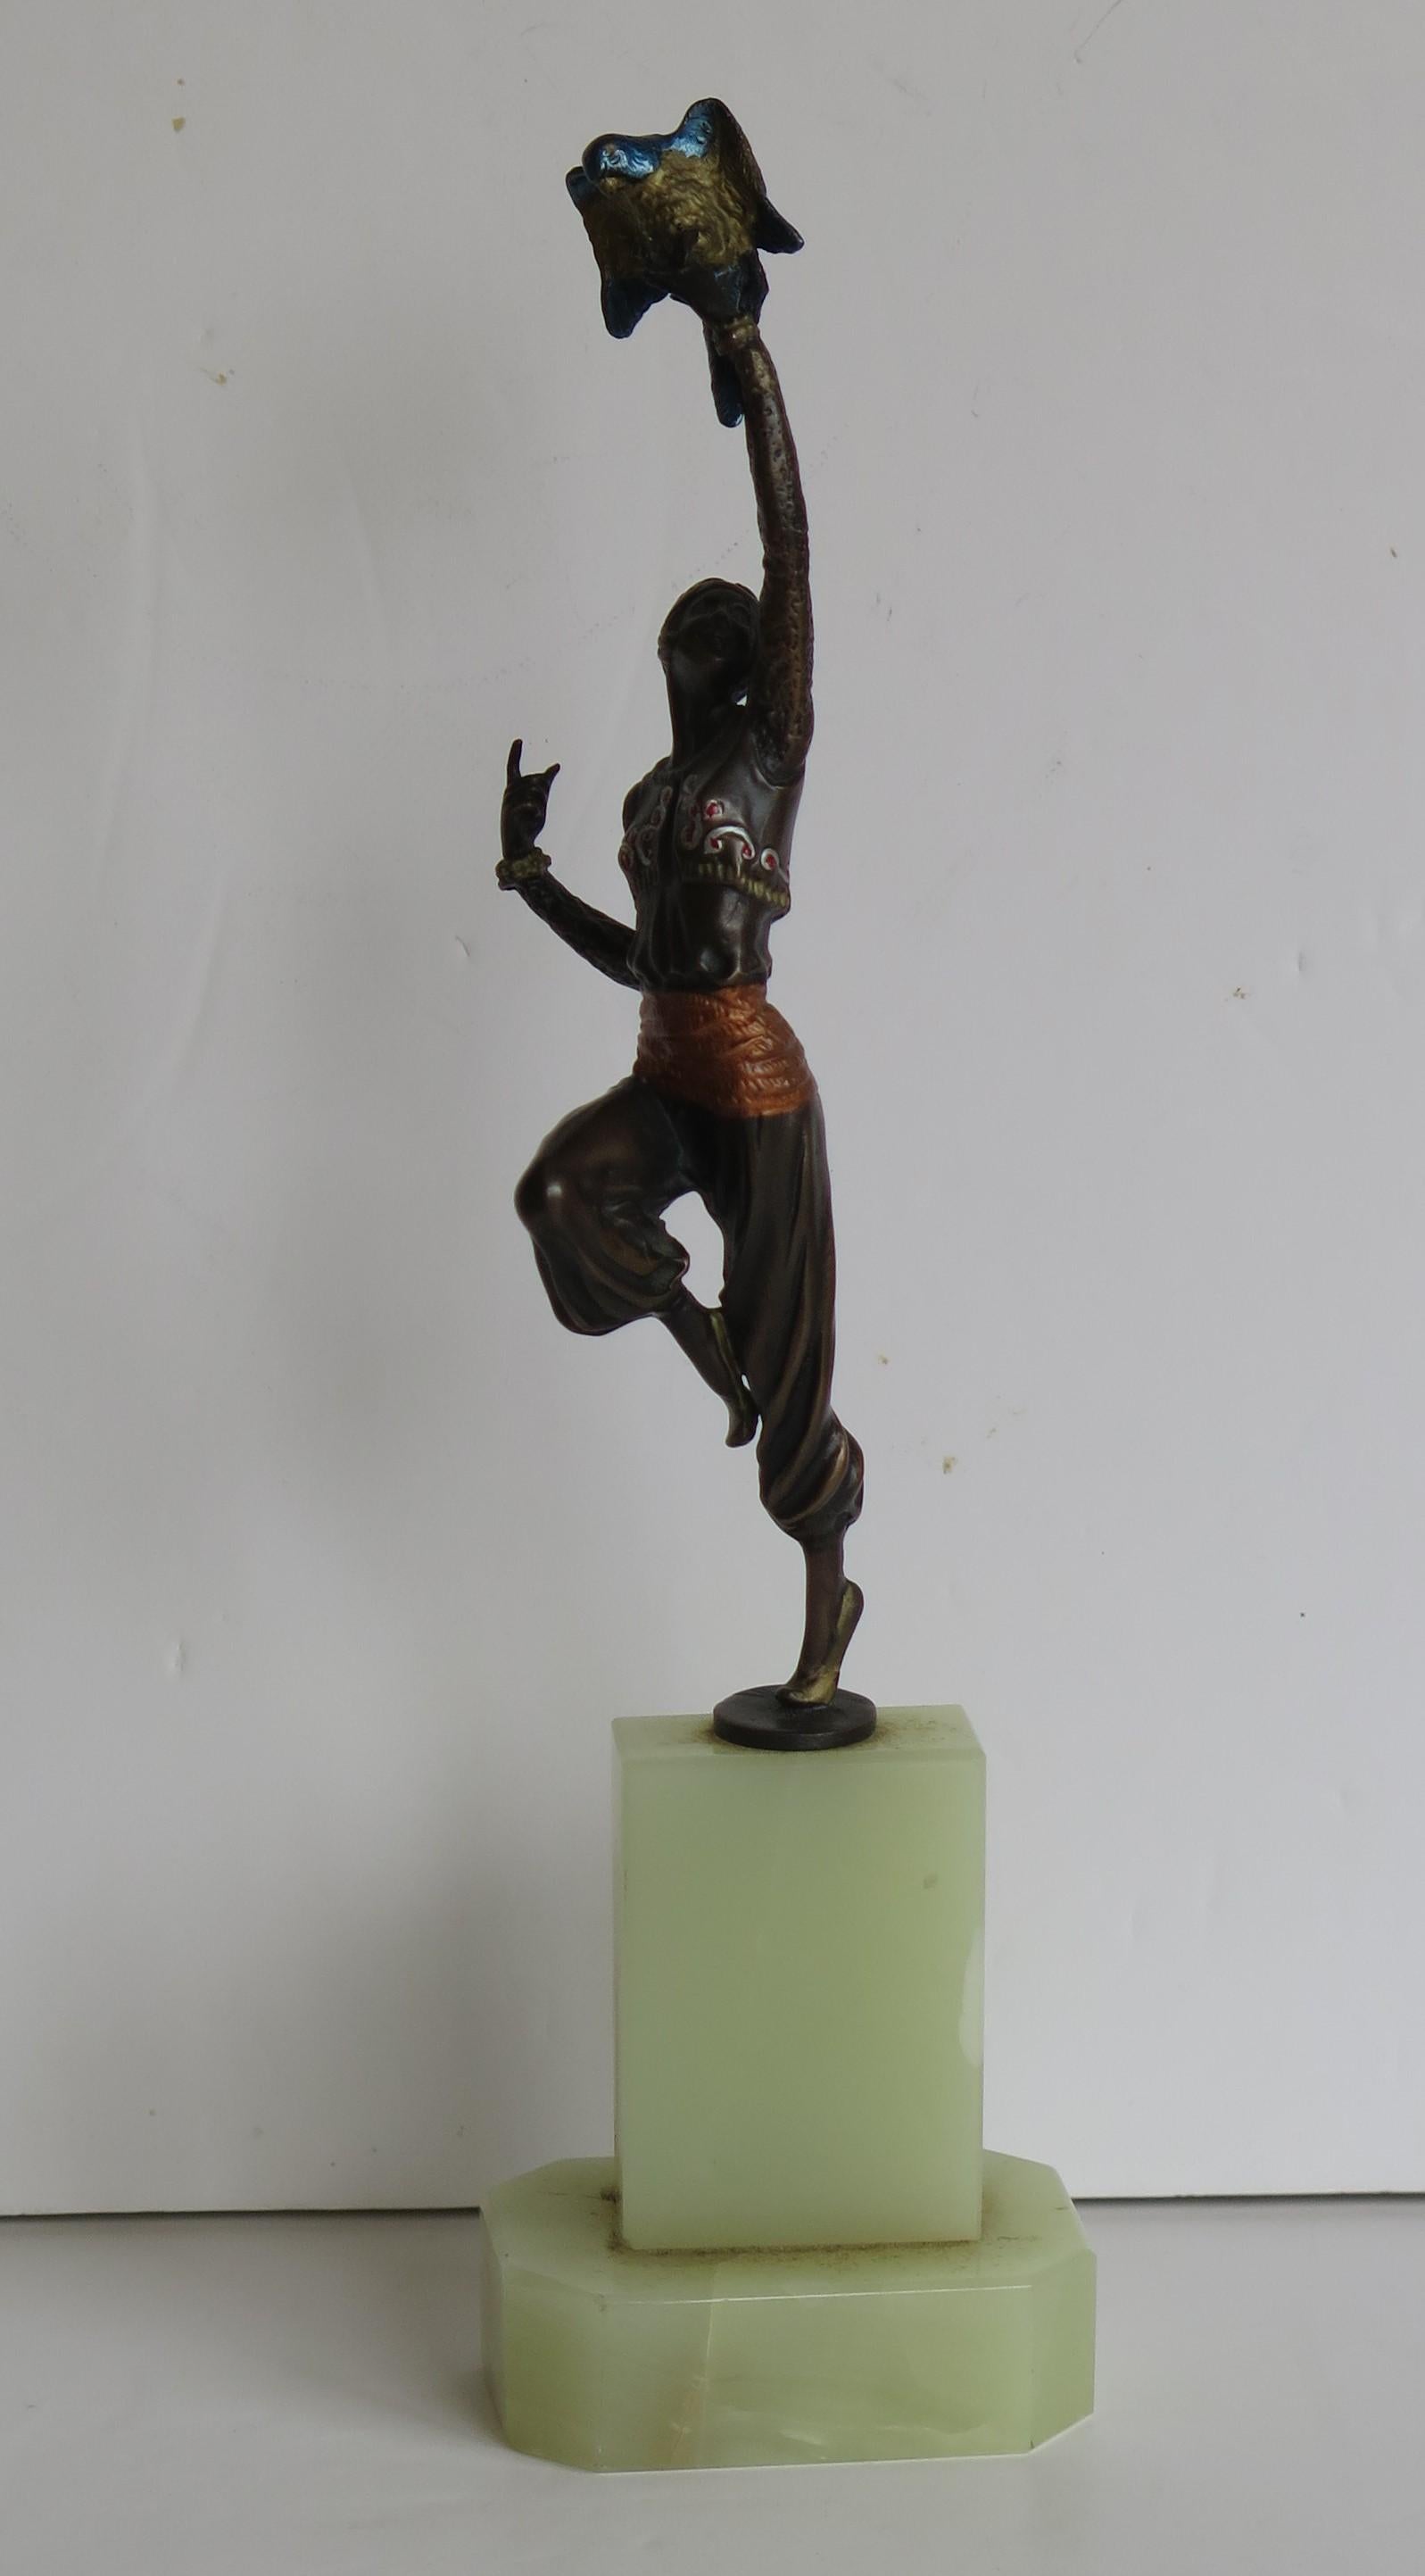 Il s'agit d'une figurine en bronze peinte à froid représentant une danseuse turque avec un perroquet, par ou après Paul Philippe, fabriquée en France dans la période Art Déco, vers 1920.

La figurine est magnifiquement sculptée par ou d'après Paul